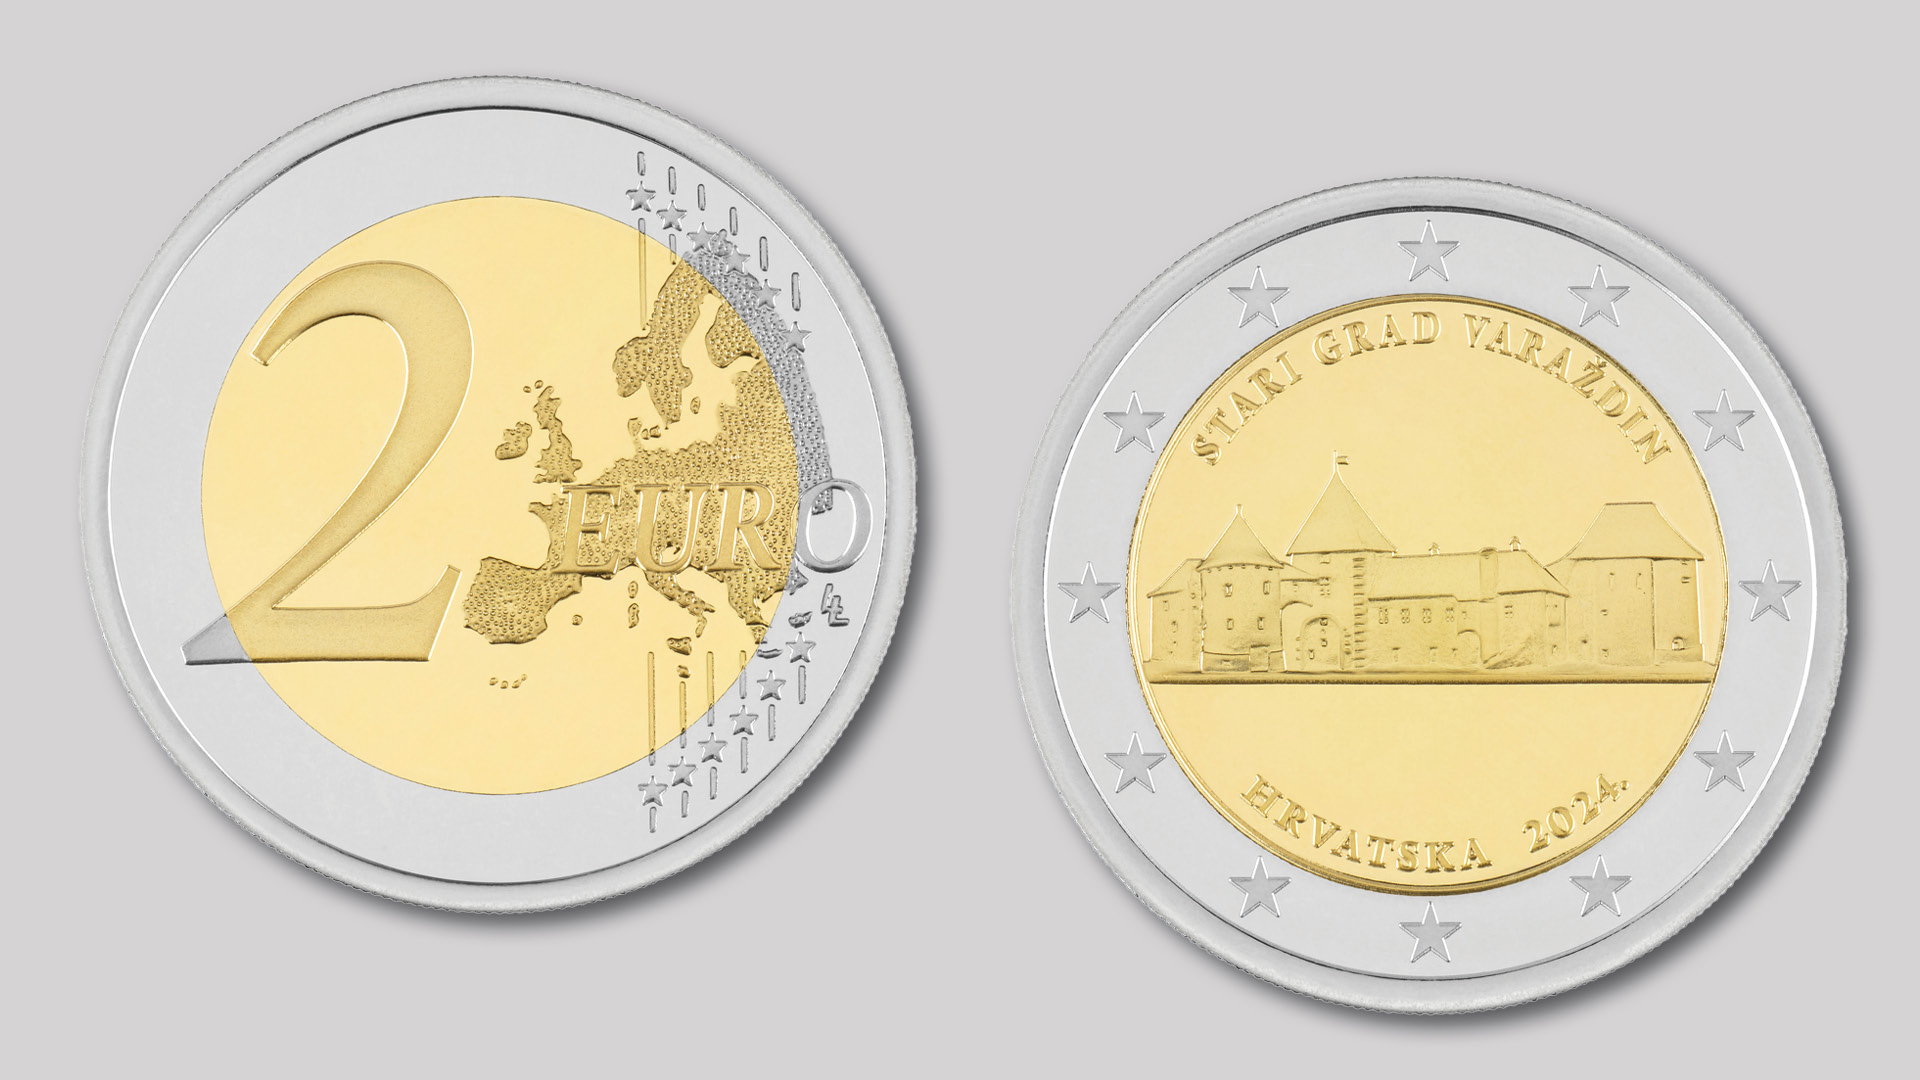 Commemorative 2-euro coin the 